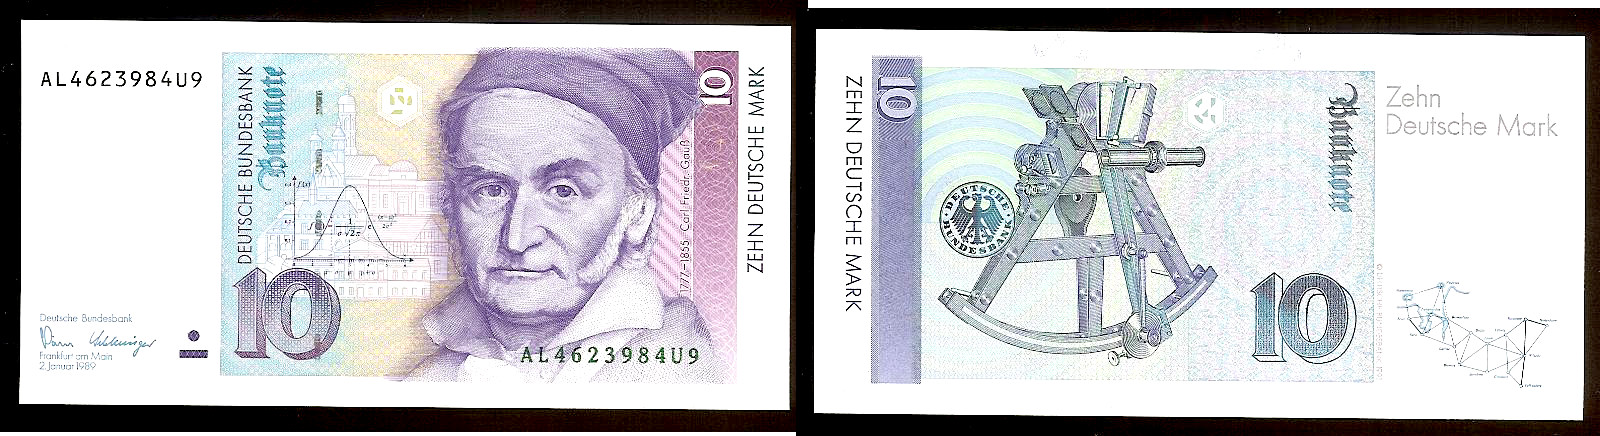 10 Deutsche Mark ALLEMAGNE 1991 NEUF